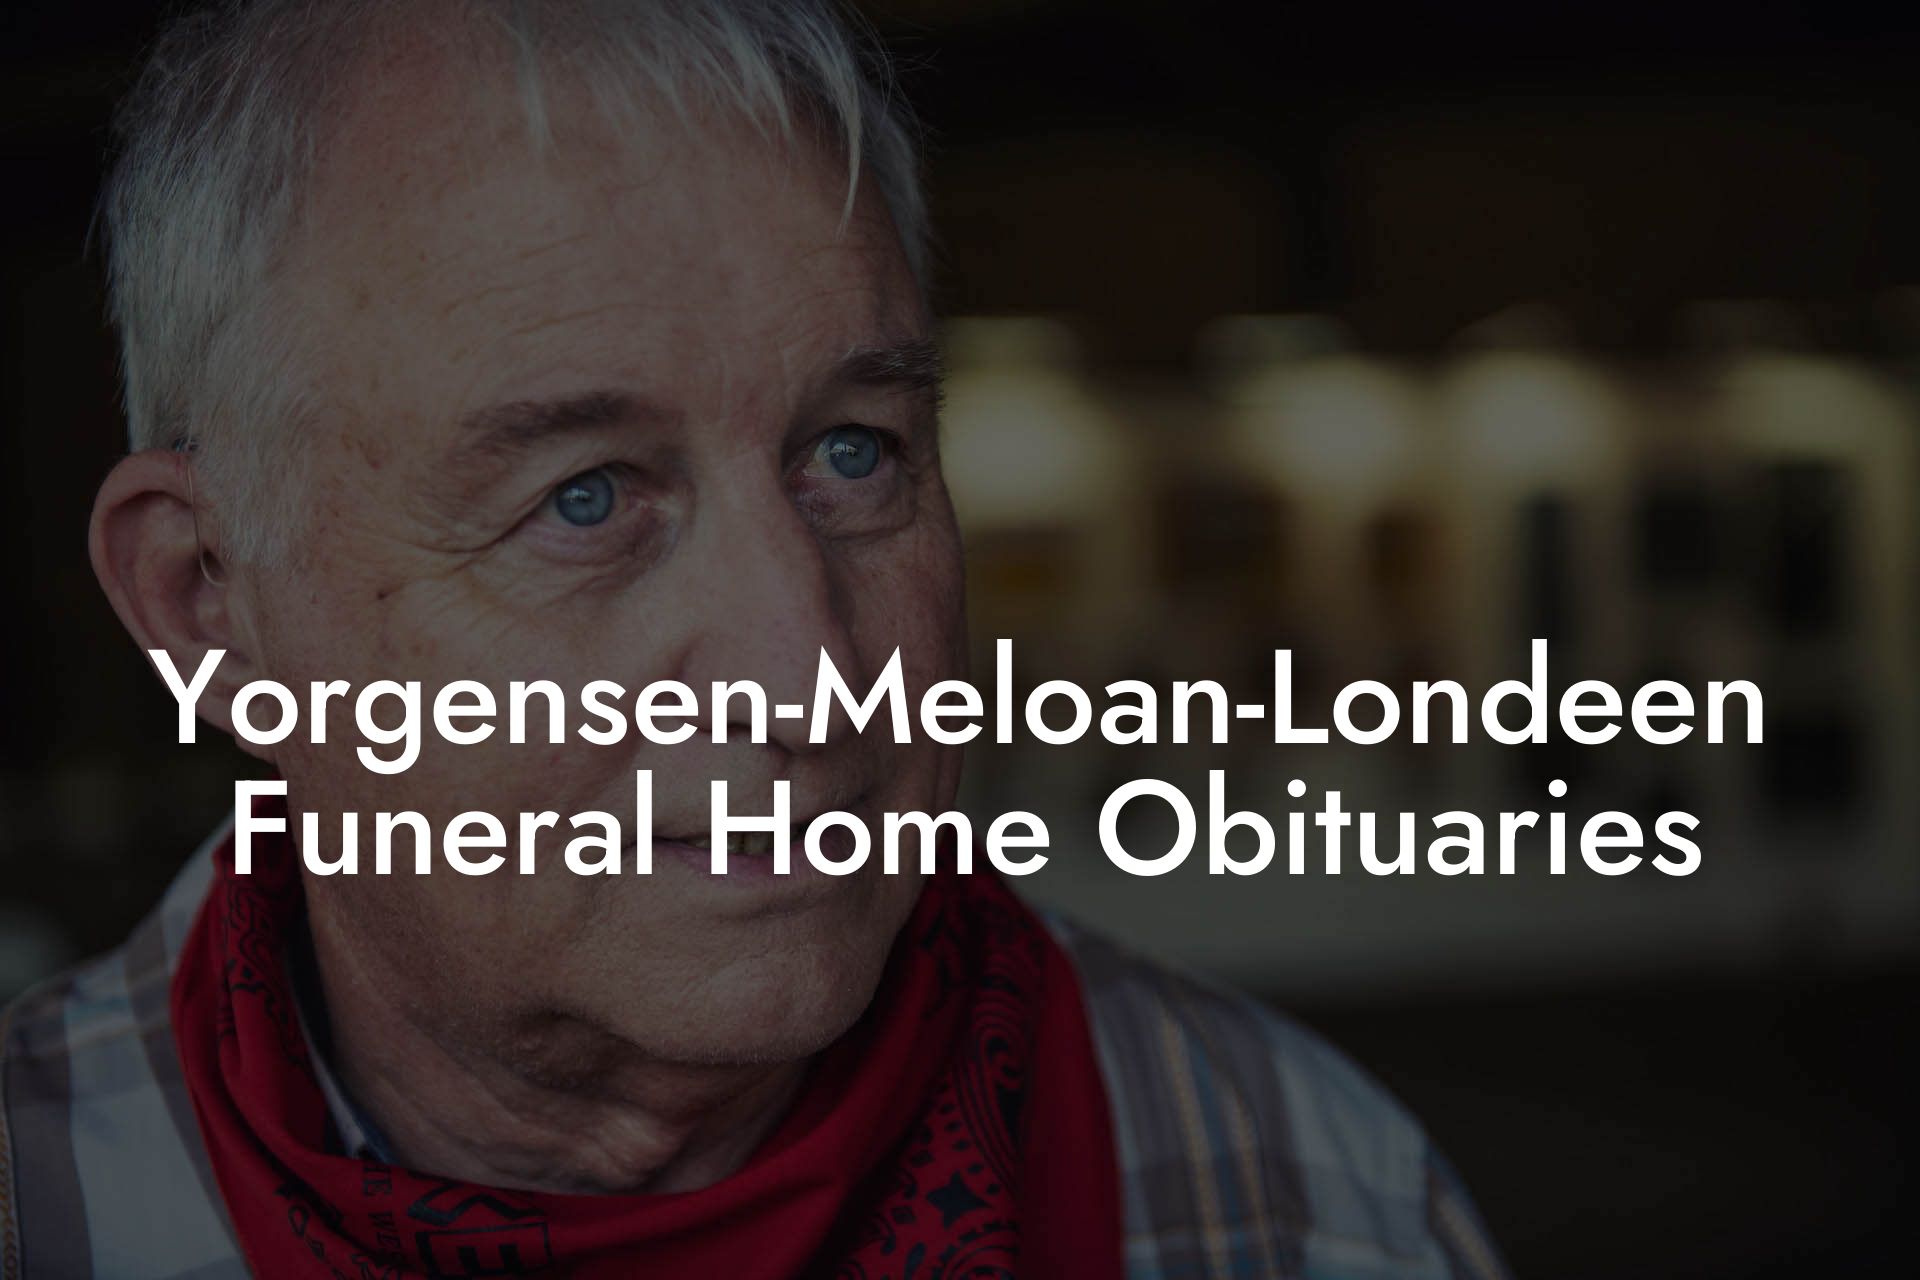 Yorgensen-Meloan-Londeen Funeral Home Obituaries